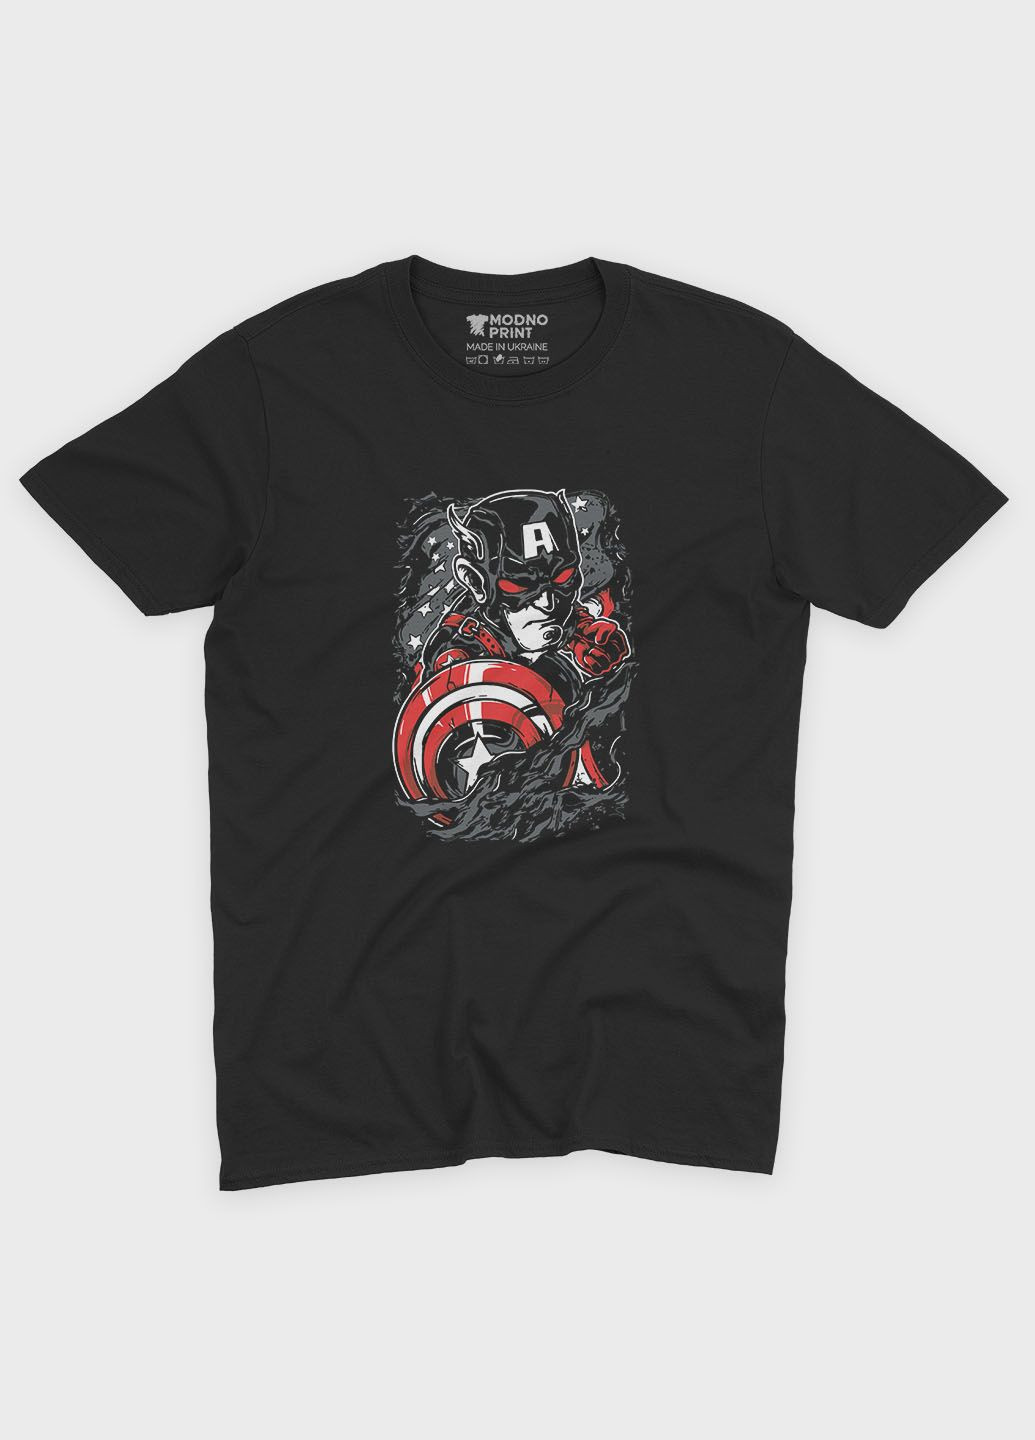 Чорна демісезонна футболка для хлопчика з принтом супергероя - капітан америка (ts001-1-bl-006-022-013-b) Modno